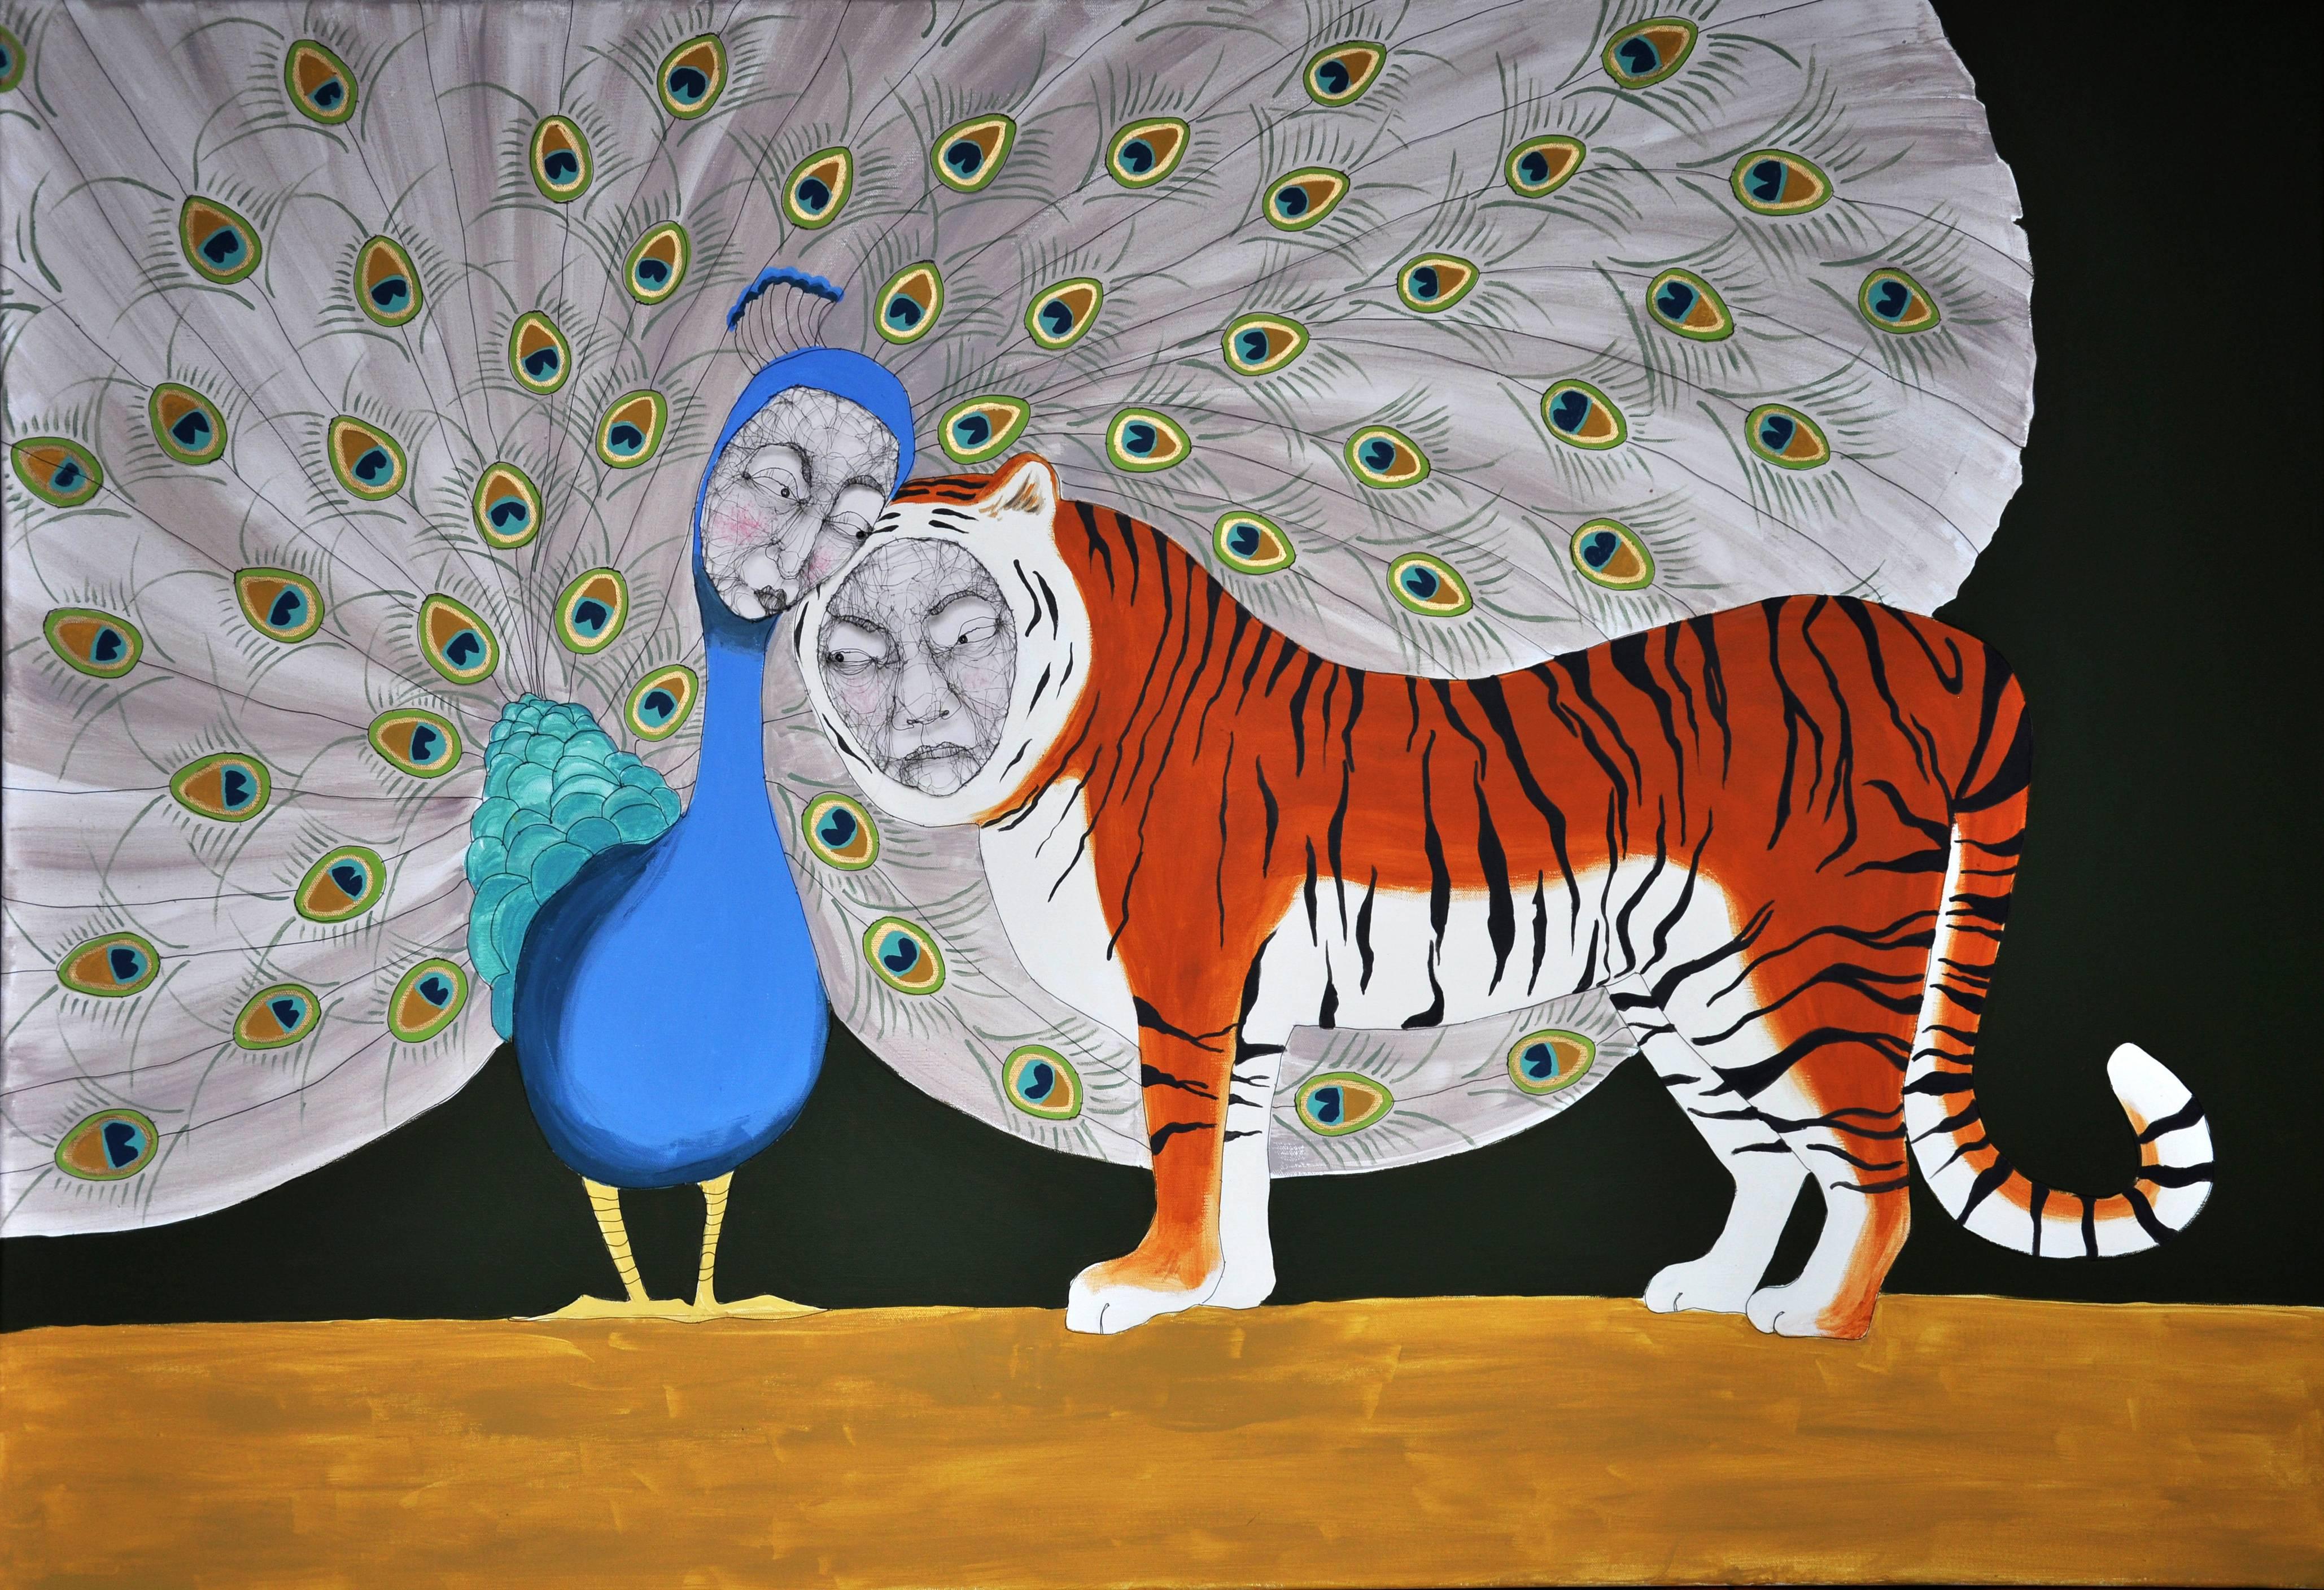 Animal Painting Fiona Morley - Love Is, peinture abstraite à l'huile sur toile en fil métallique avec paon et tigre